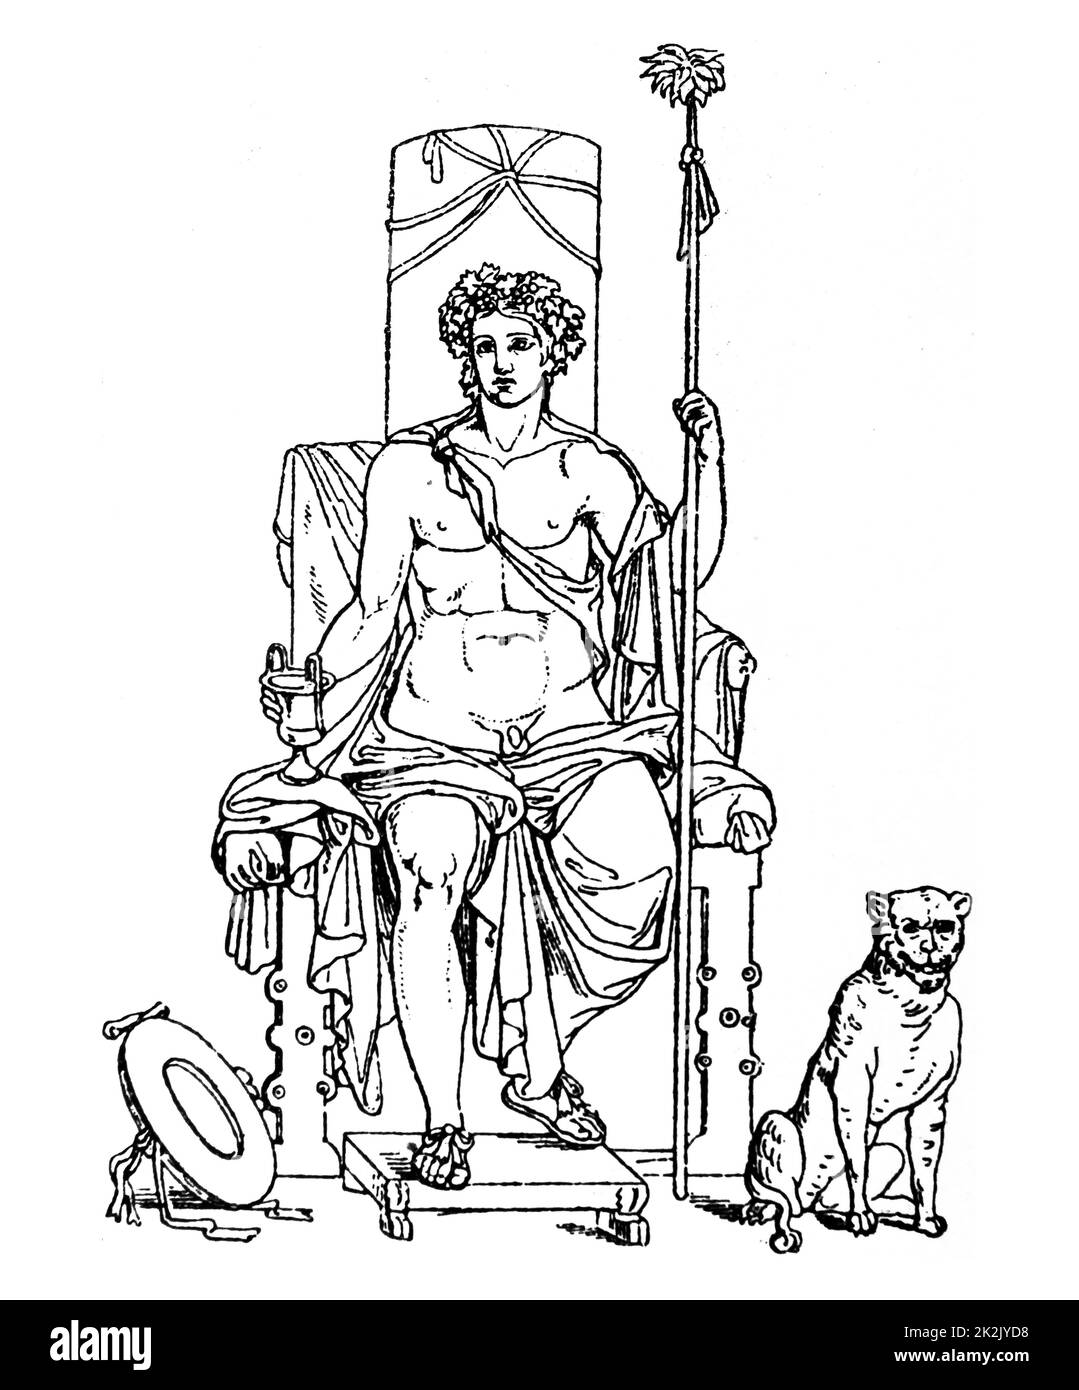 Illustrazione di una scultura Greca raffigurante il culto di Dioniso, dio del vino, alla vendemmia, alla vinificazione, Vino, rituale follia, Religiosi di Ecstasy e teatro. Foto Stock